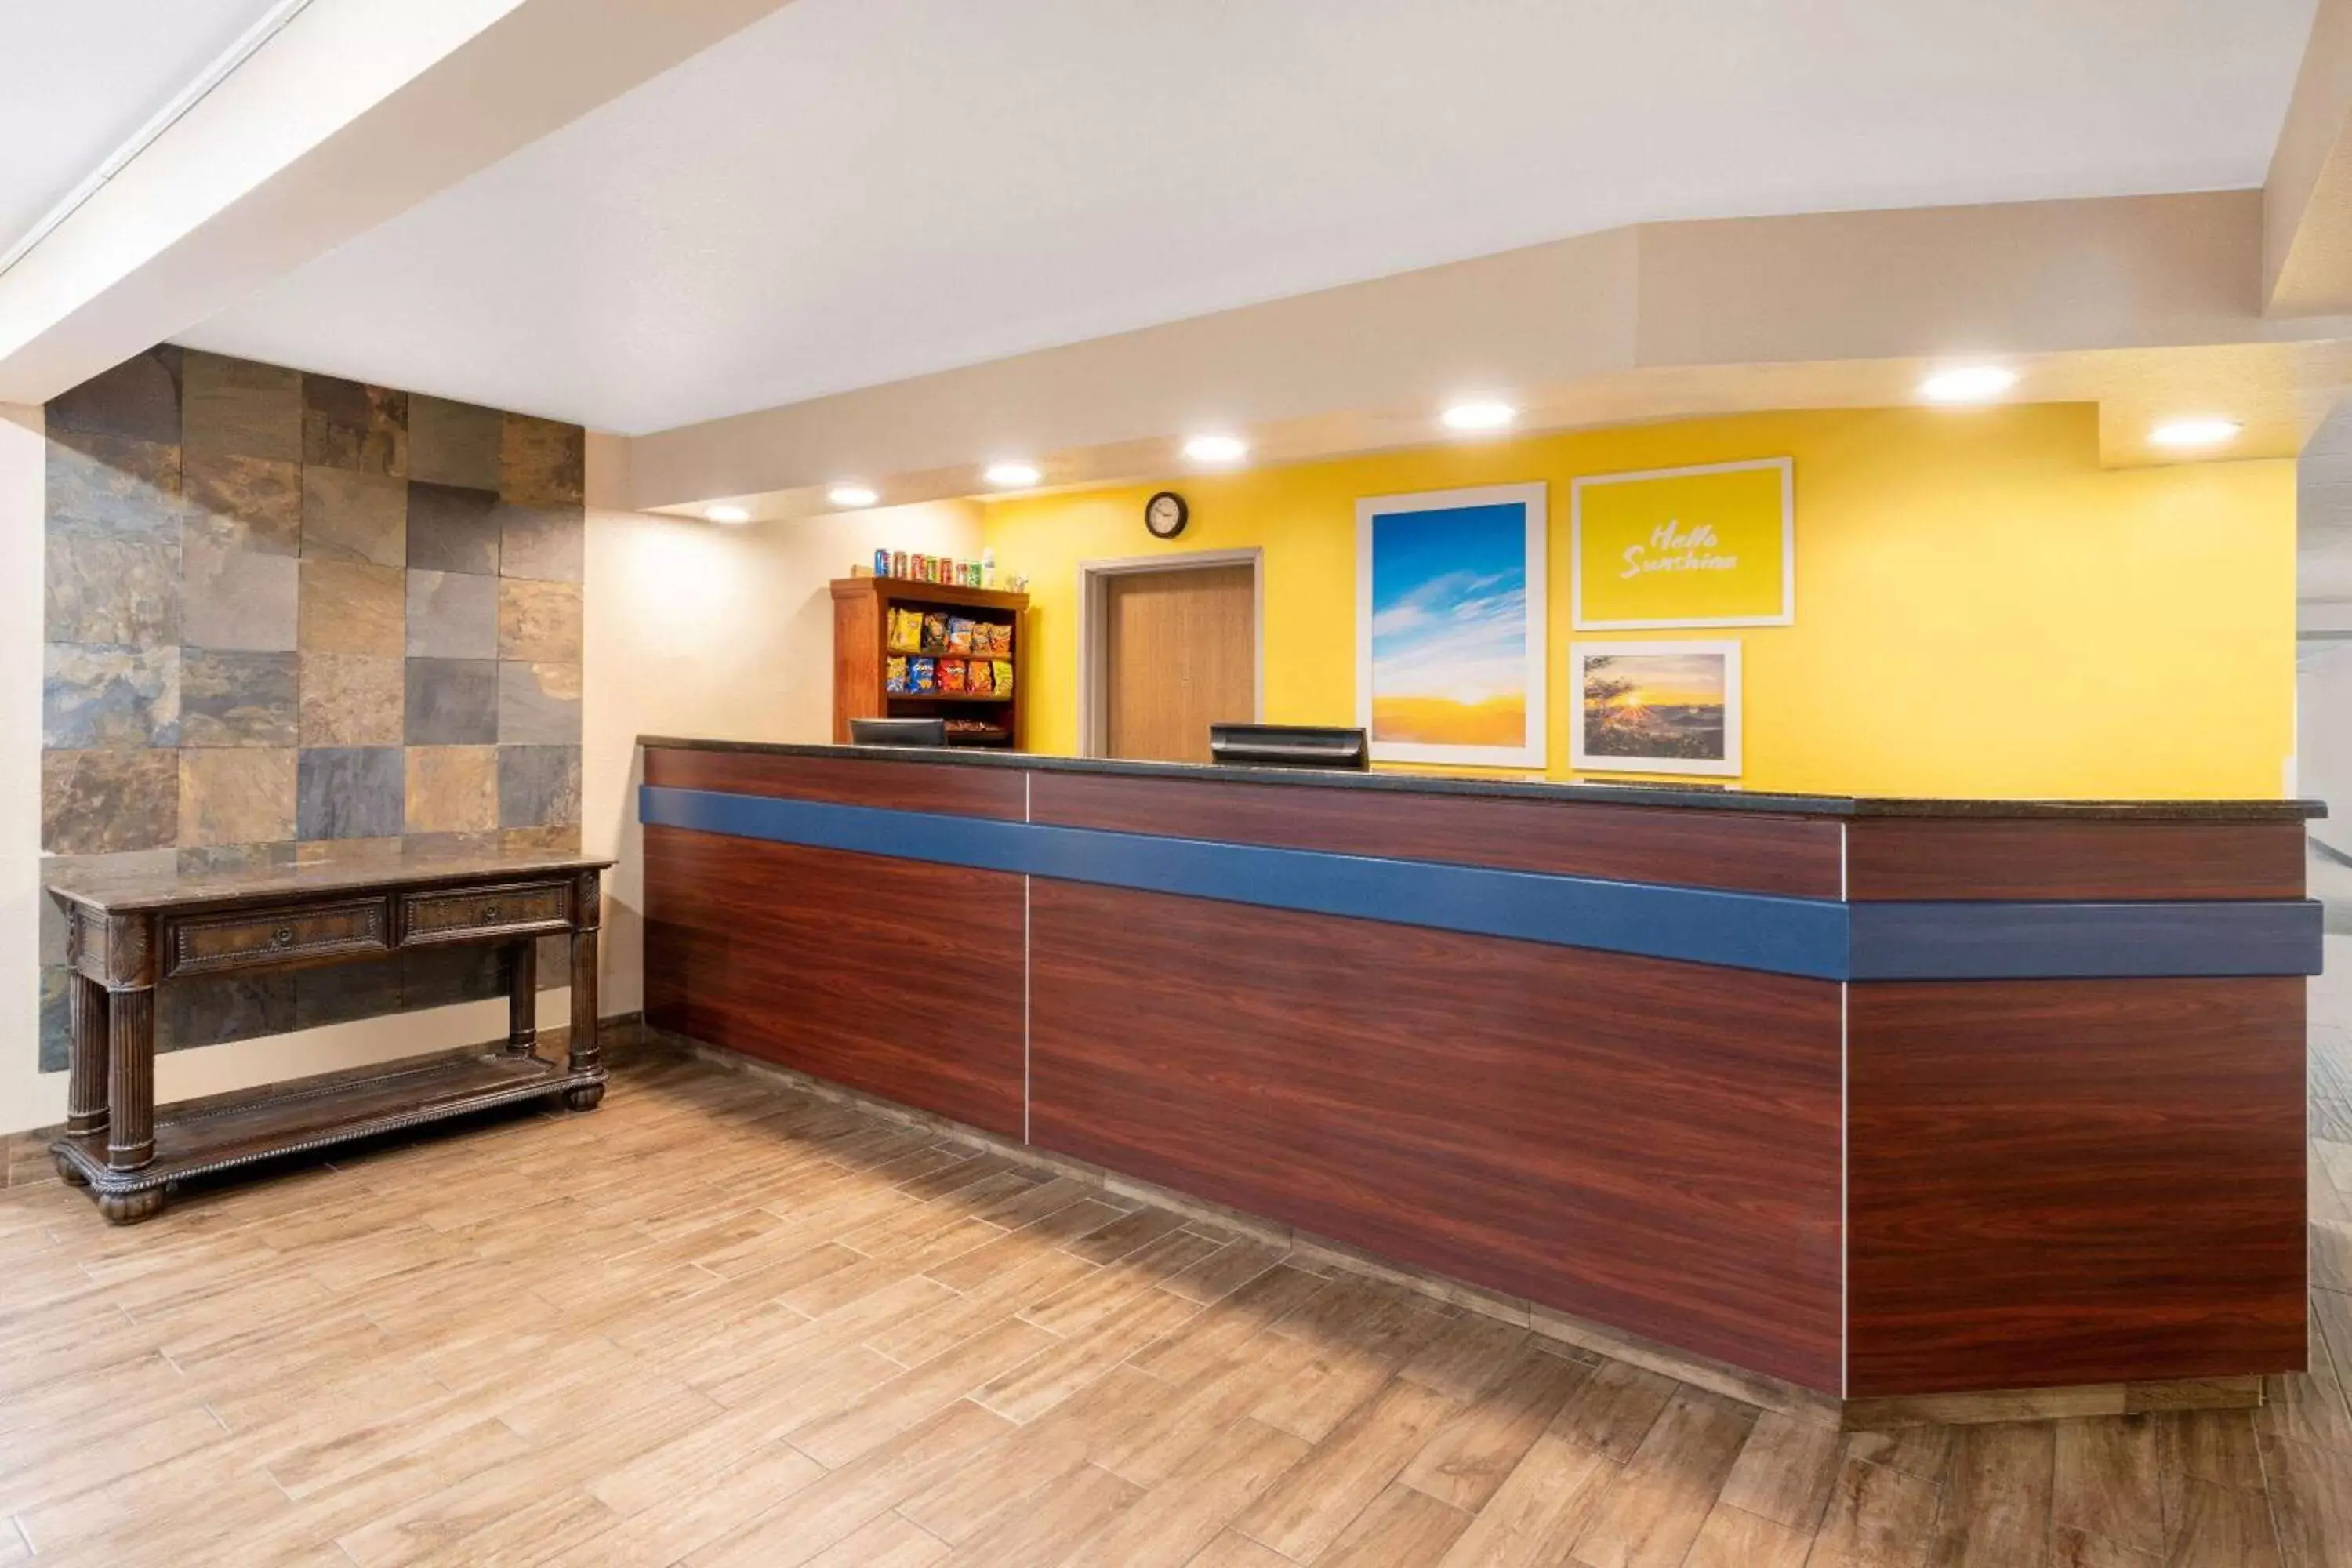 Lobby or reception, Lobby/Reception in Days Inn & Suites by Wyndham Greeley